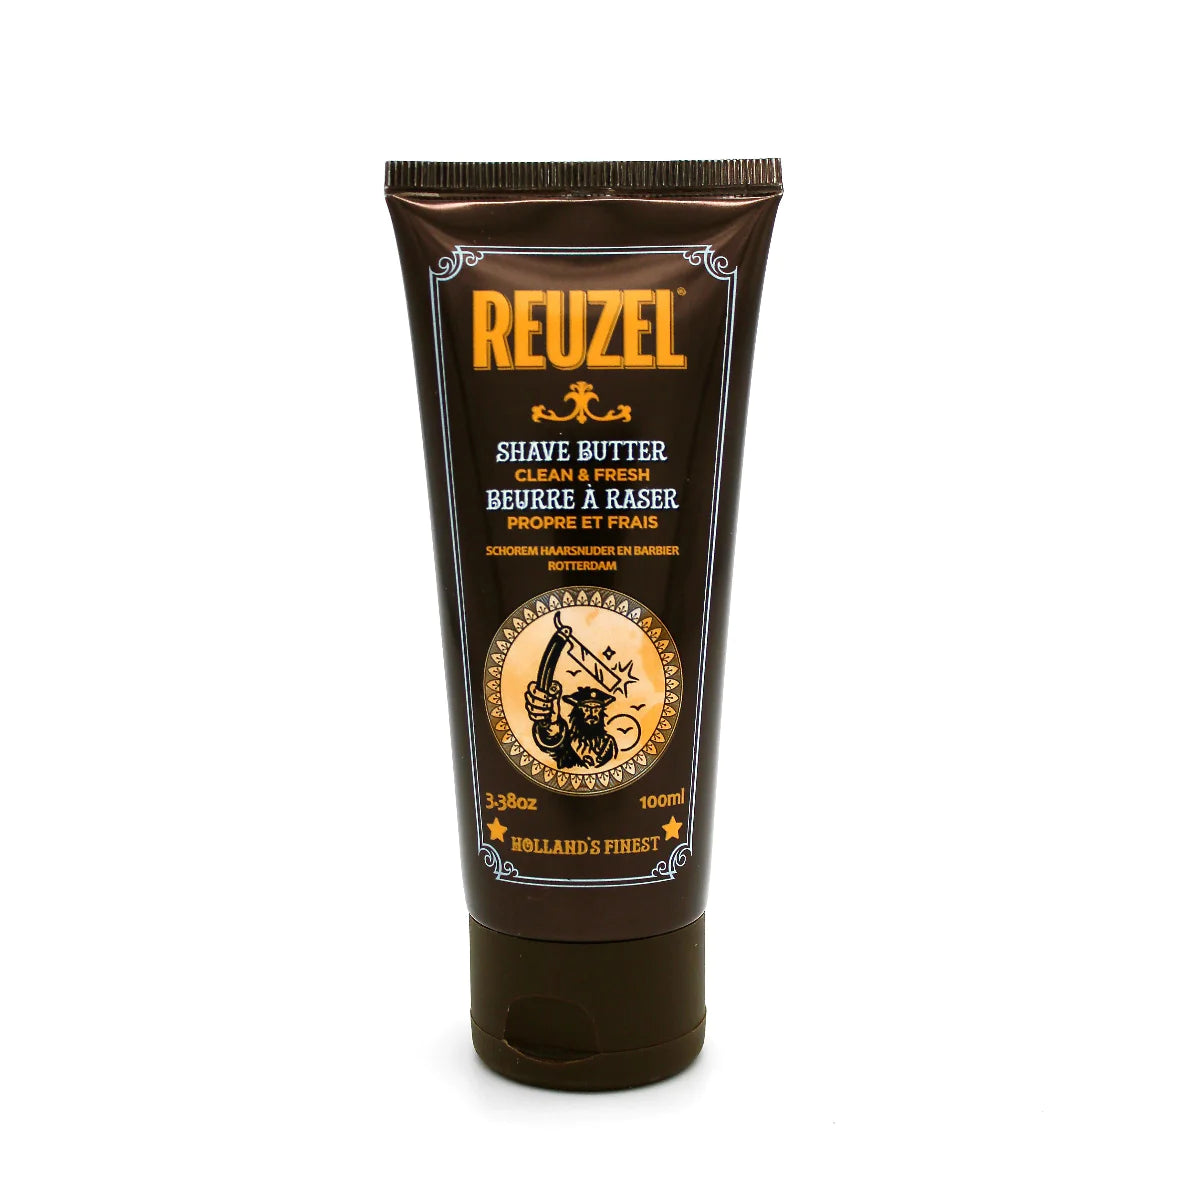 Reuzel "Shave butter Clean & fresh" parranajovoide (100ml)